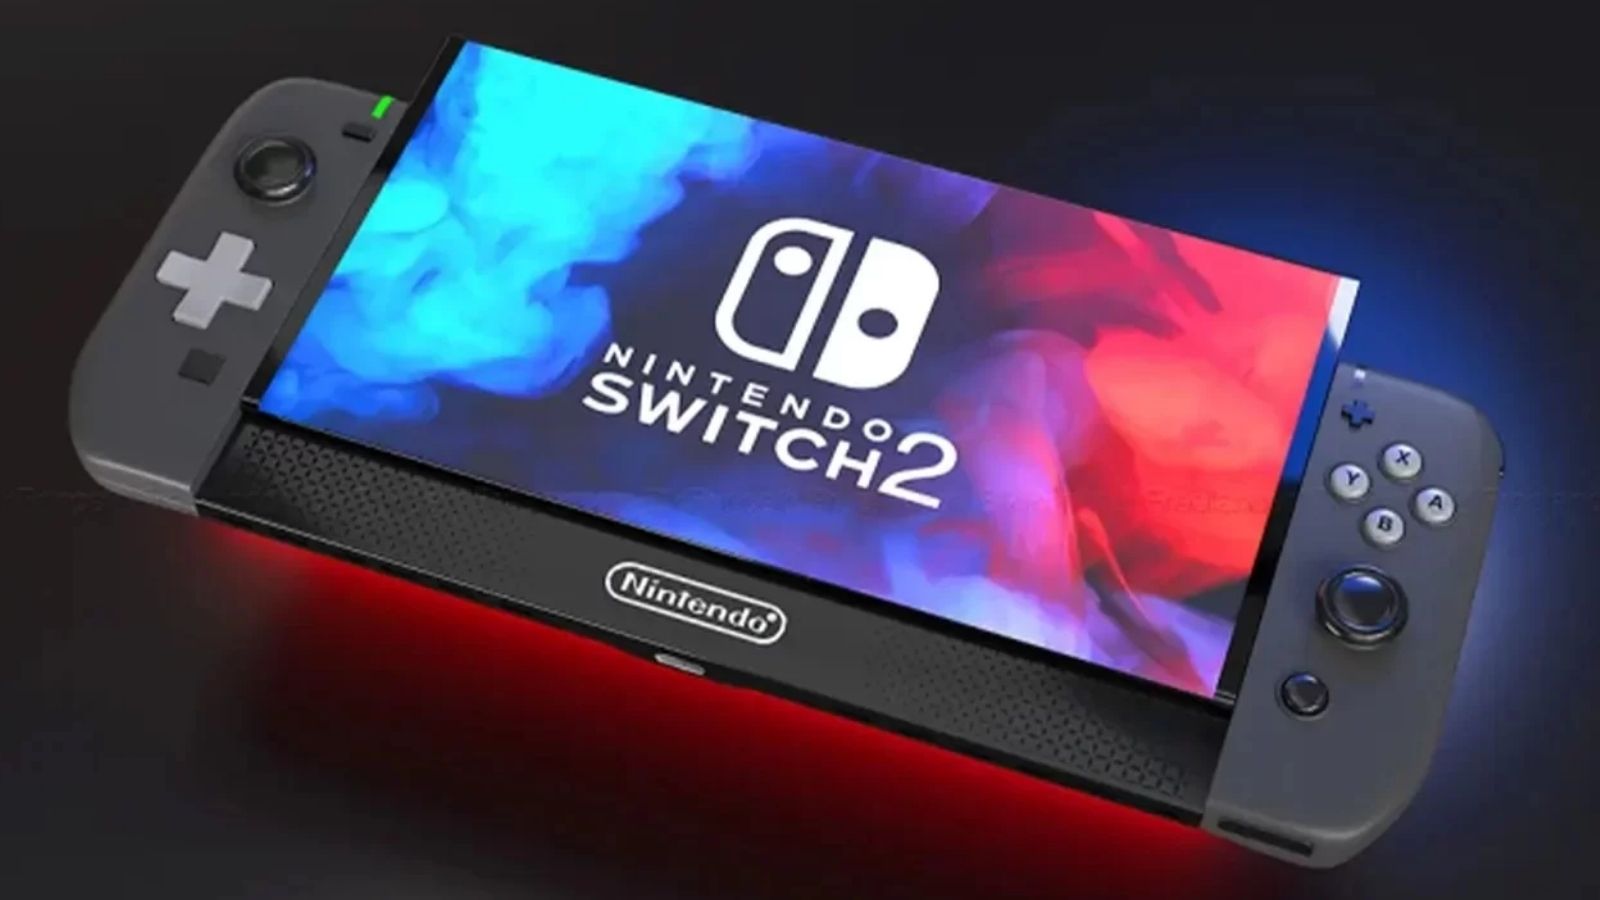  Nintendo Switch 2: altri rumor accendono l'attesa per la nuova console